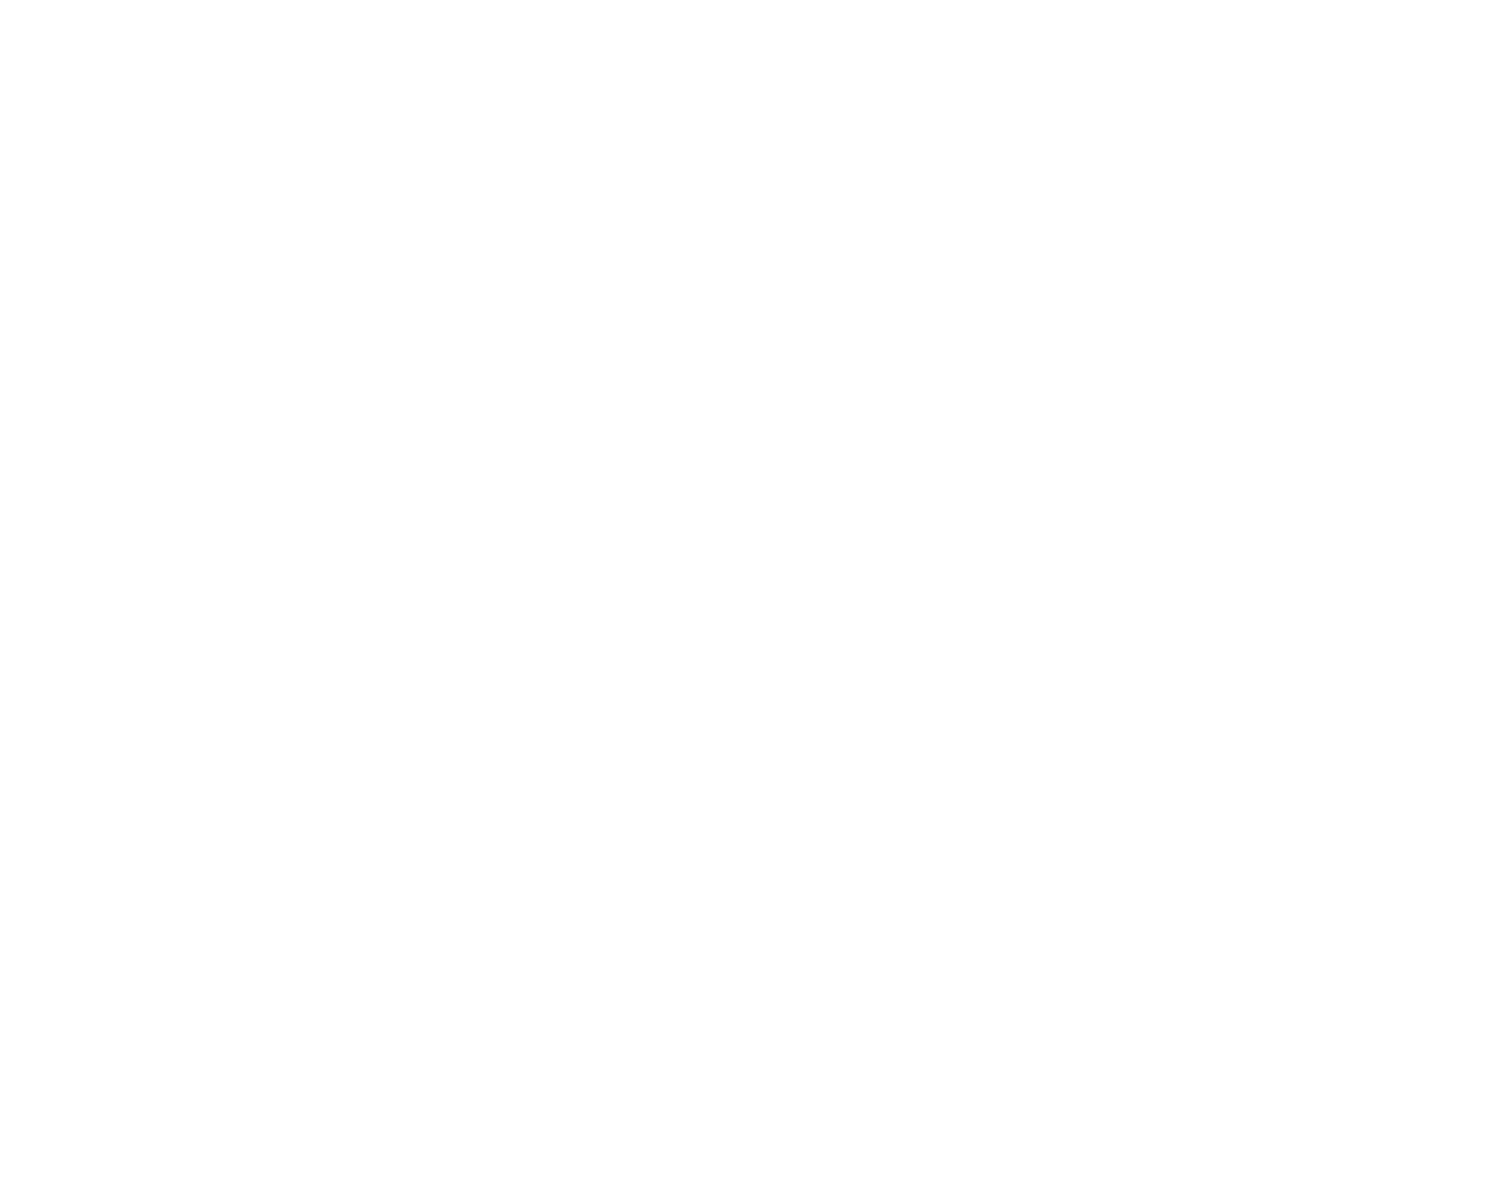 Showplace Productions